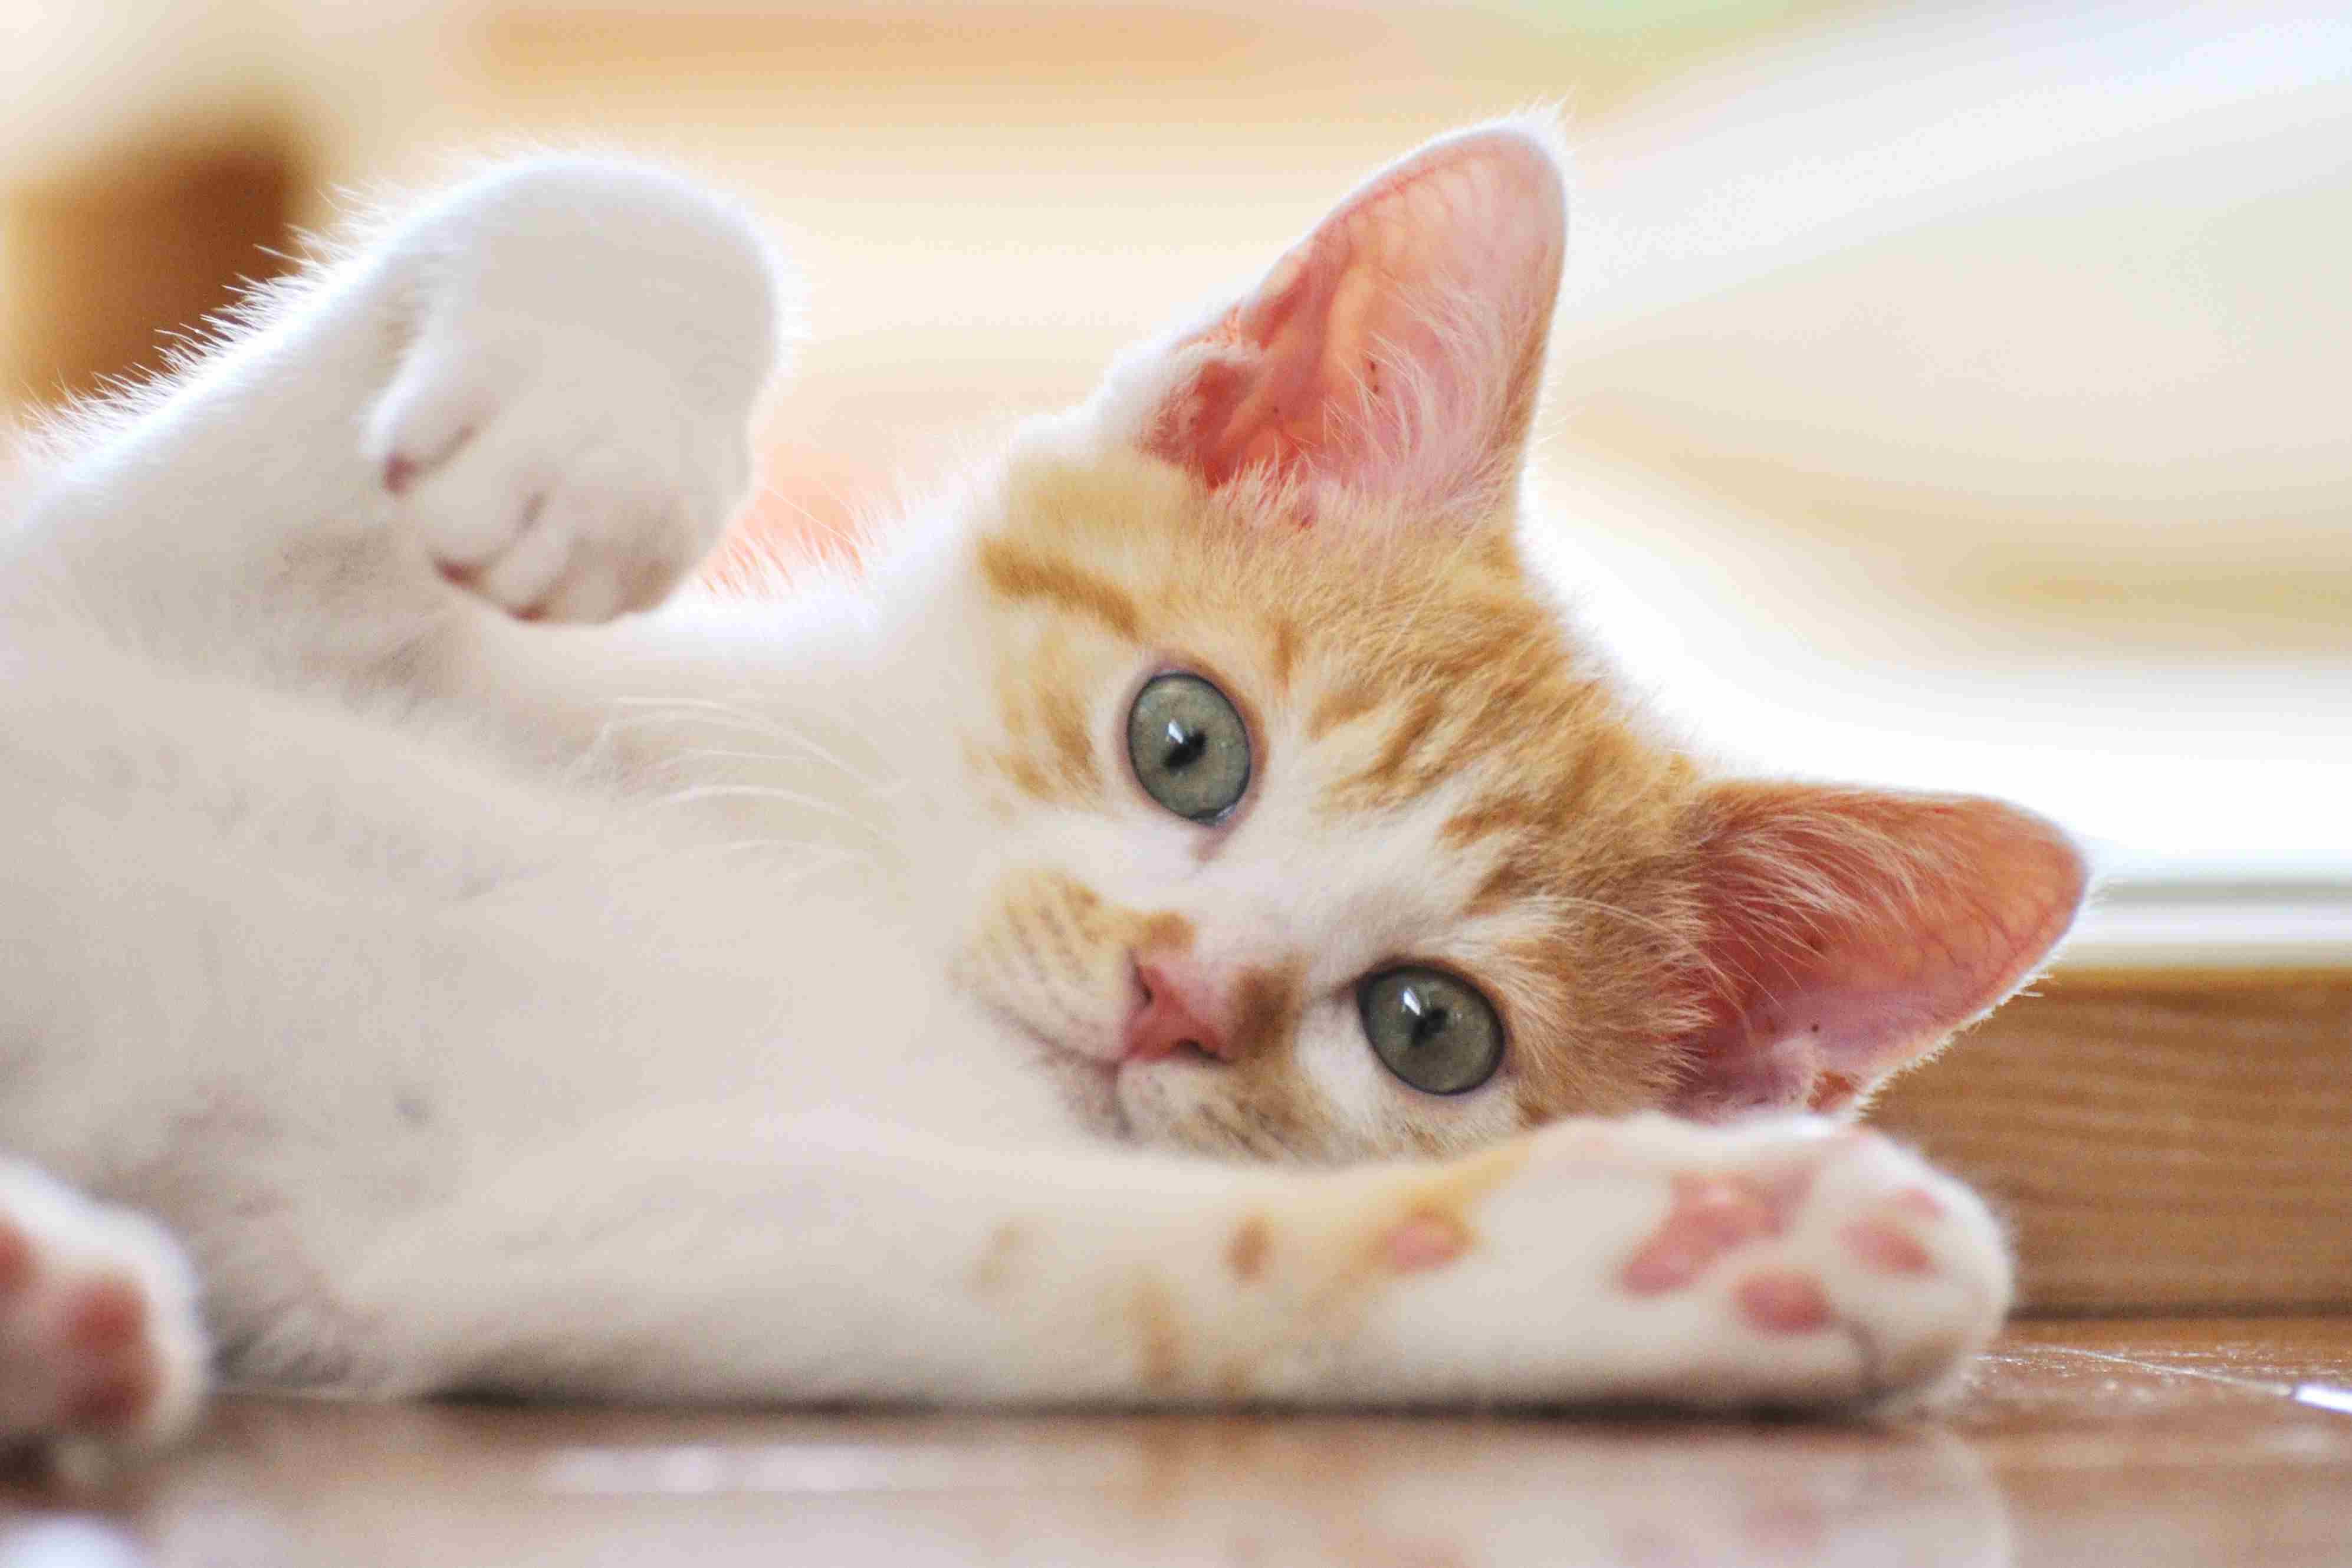 A white and orange kitten